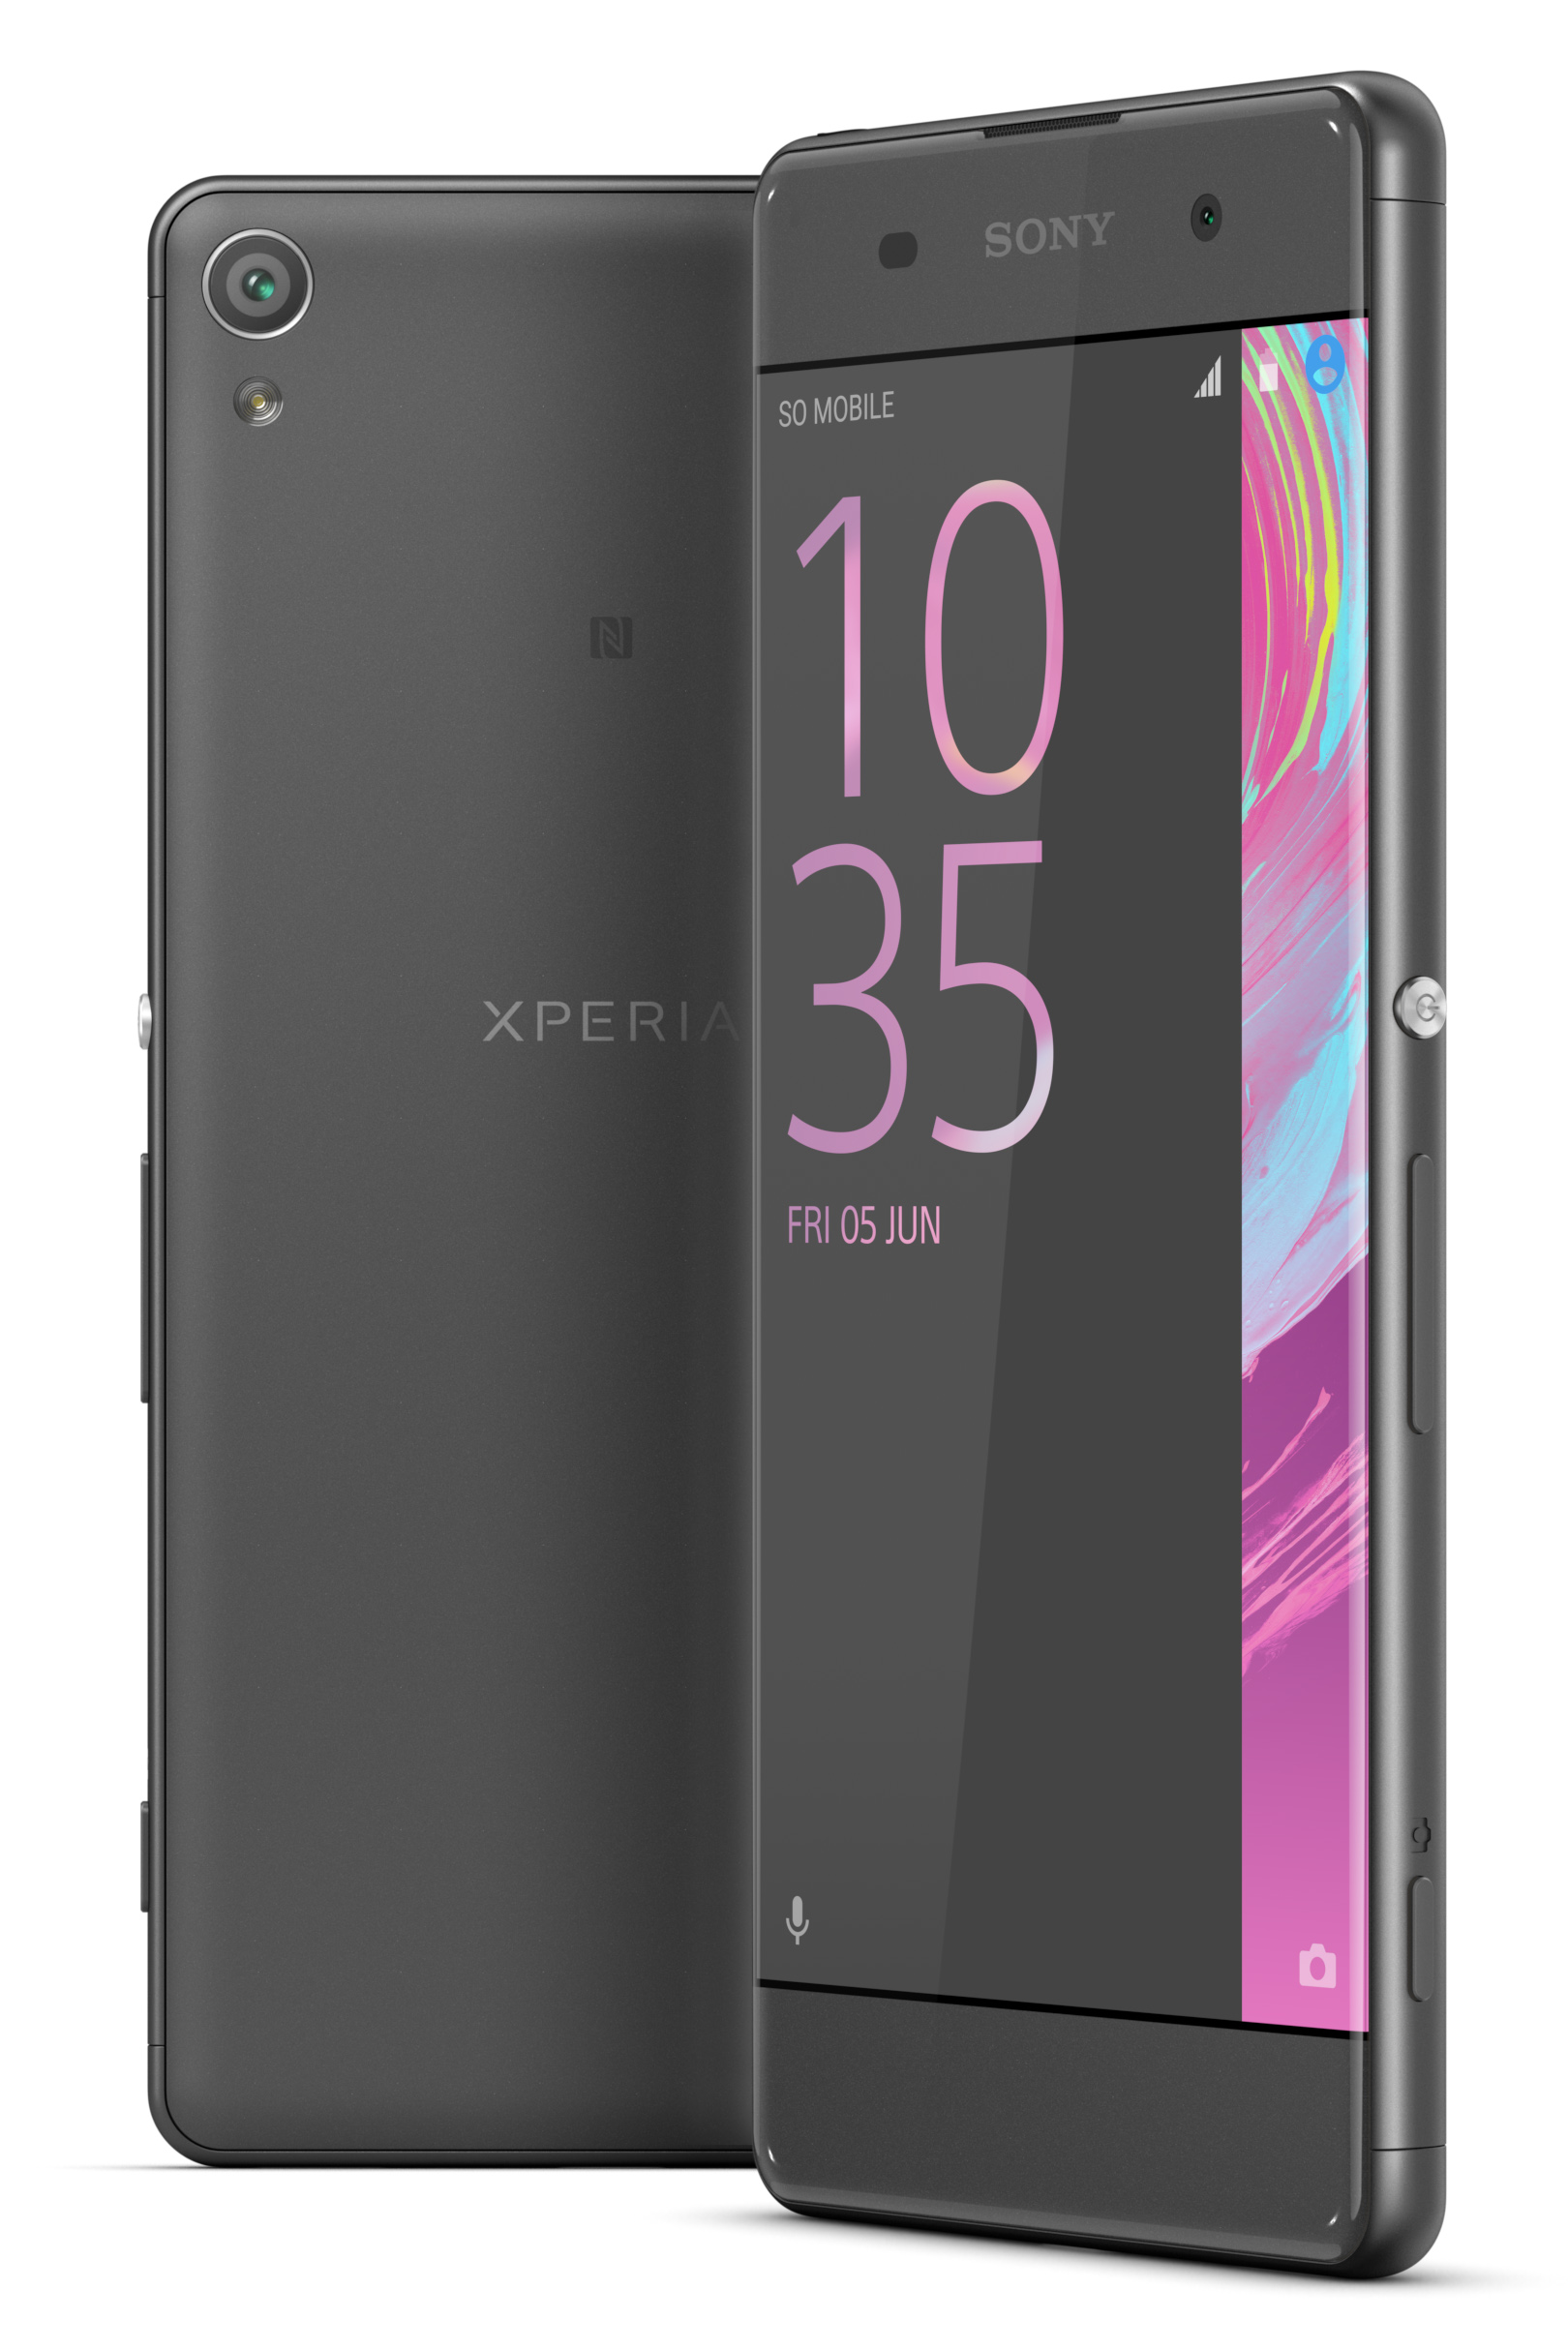 Sony Xperia Xa Ultra F3213 16gb Unlocked Gsm 21mp Camera 6